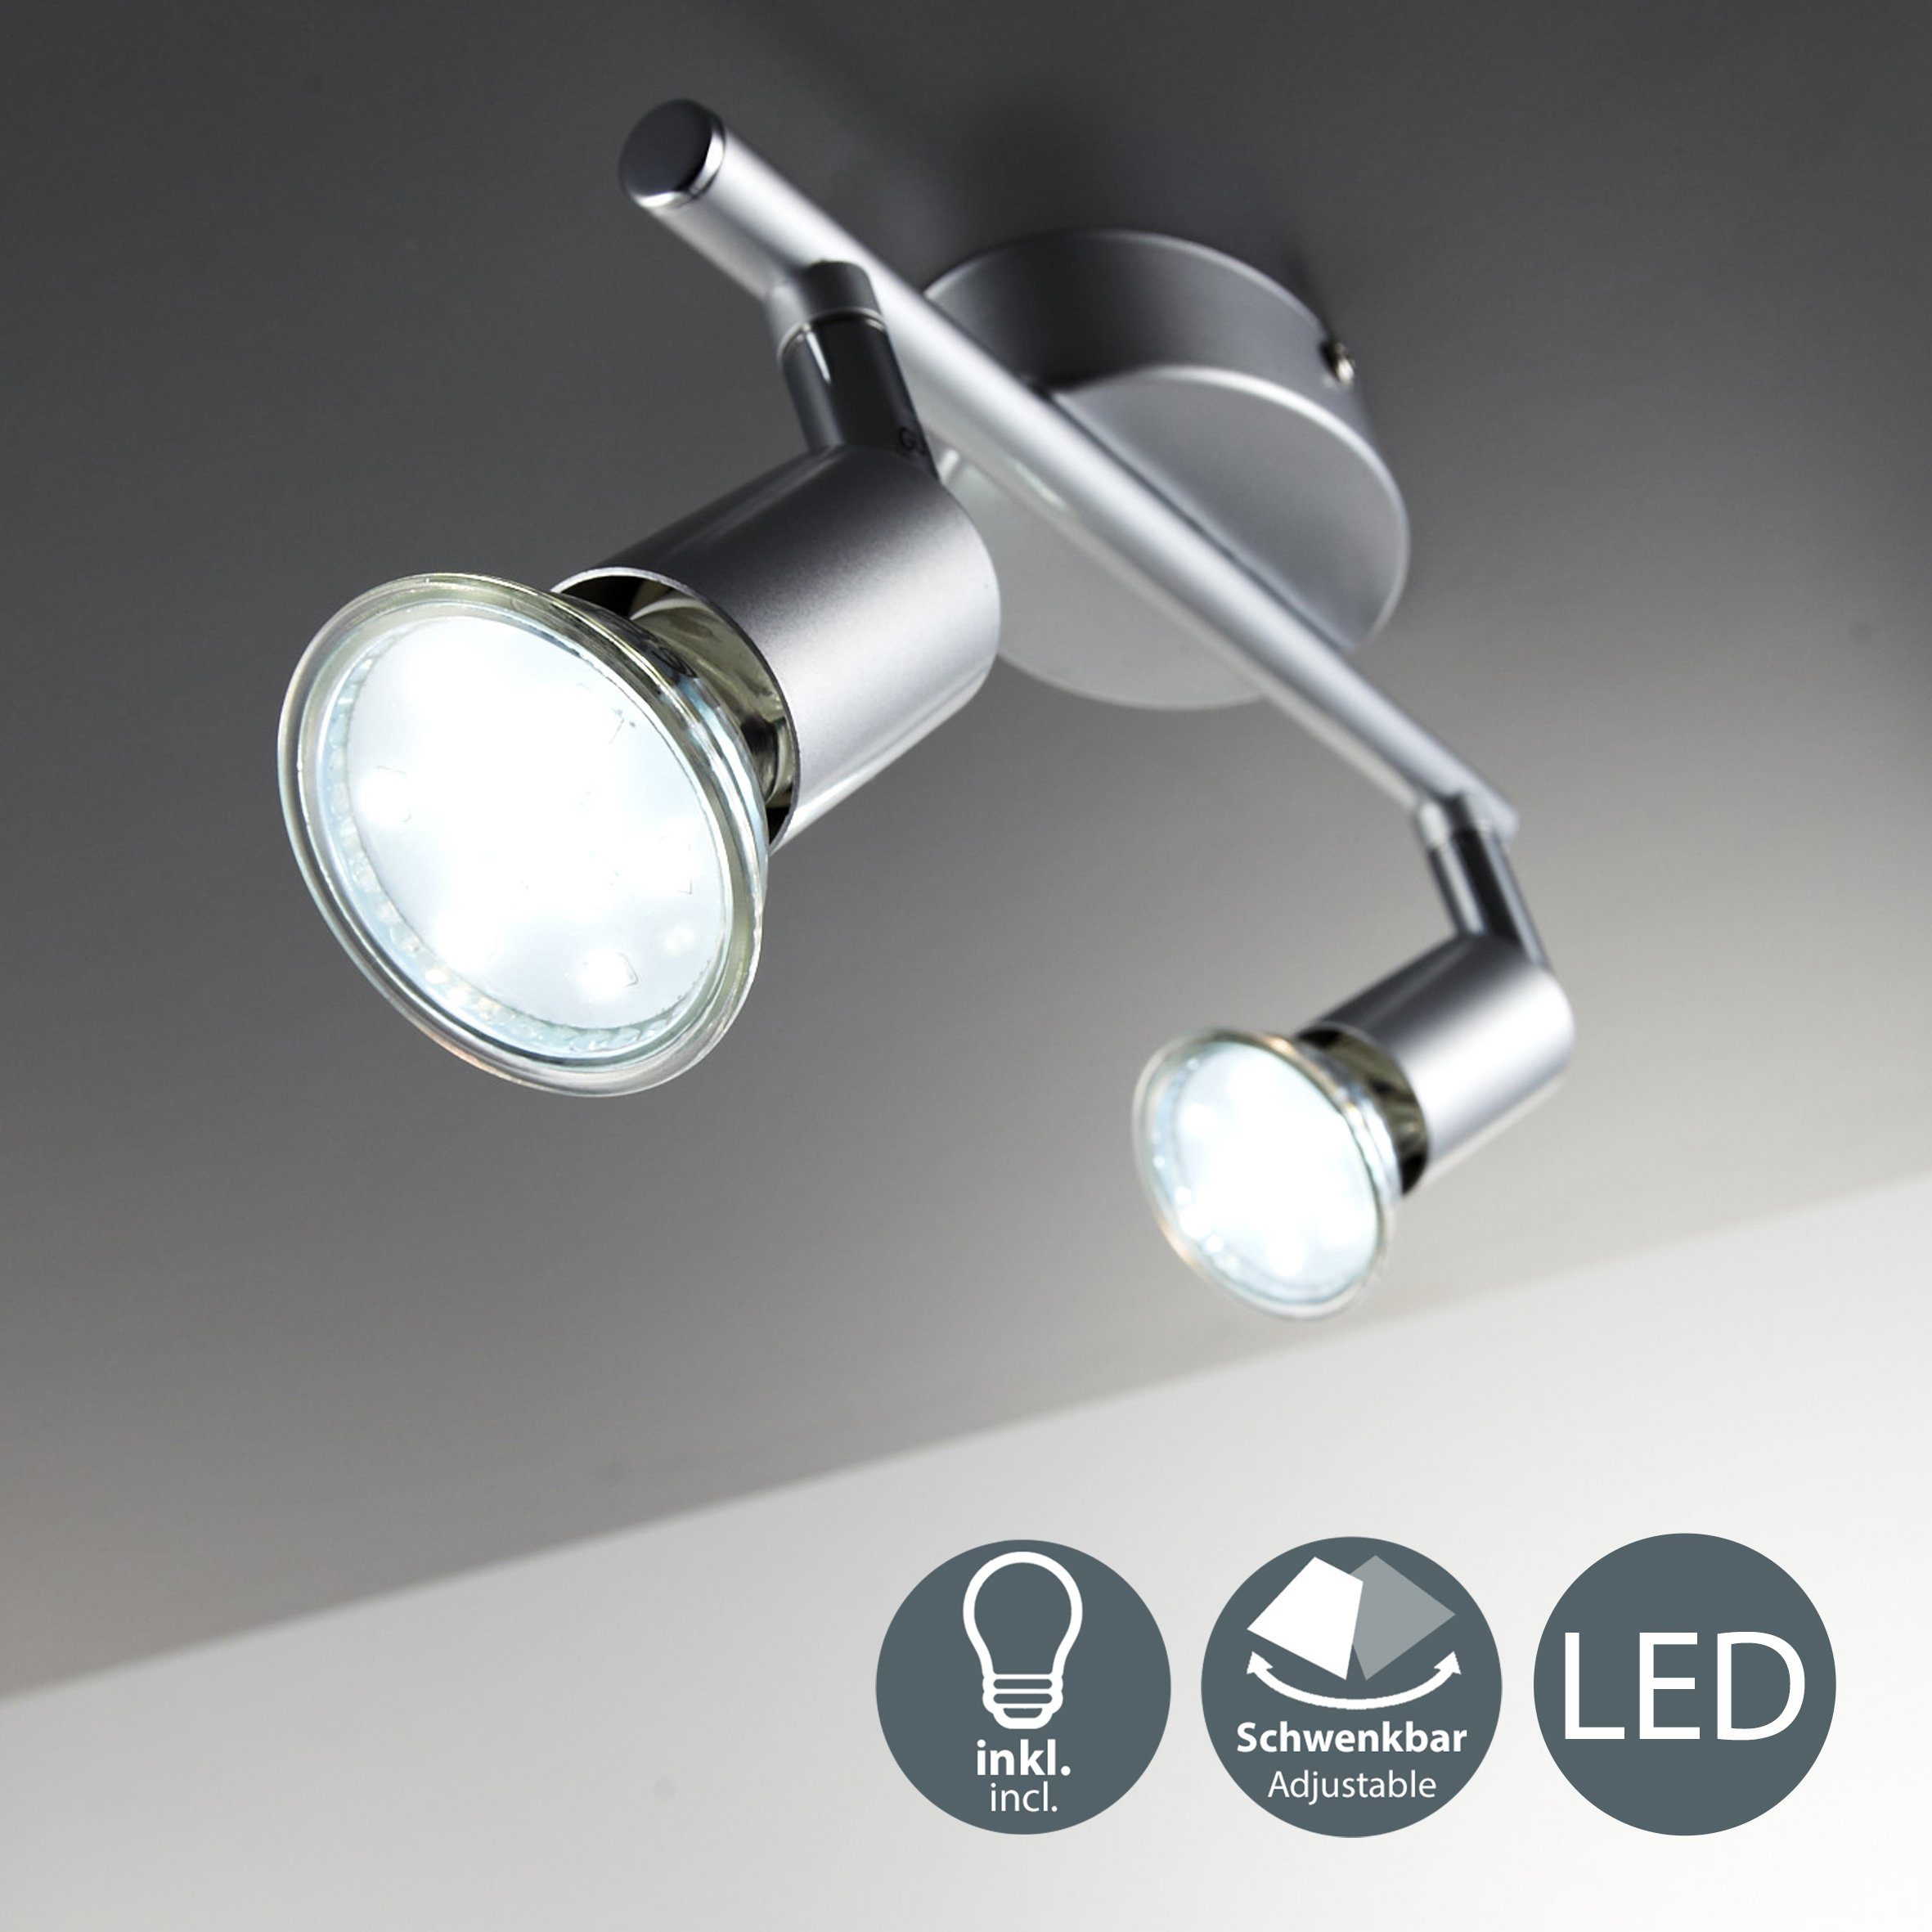 Deckenlampe 250lm LED inkl. Wohnzimmer LED GU10 Decken-Spot 3W B.K.Licht wechselbar, Warmweiß, Leuchtmittel Deckenleuchte, schwenkbar